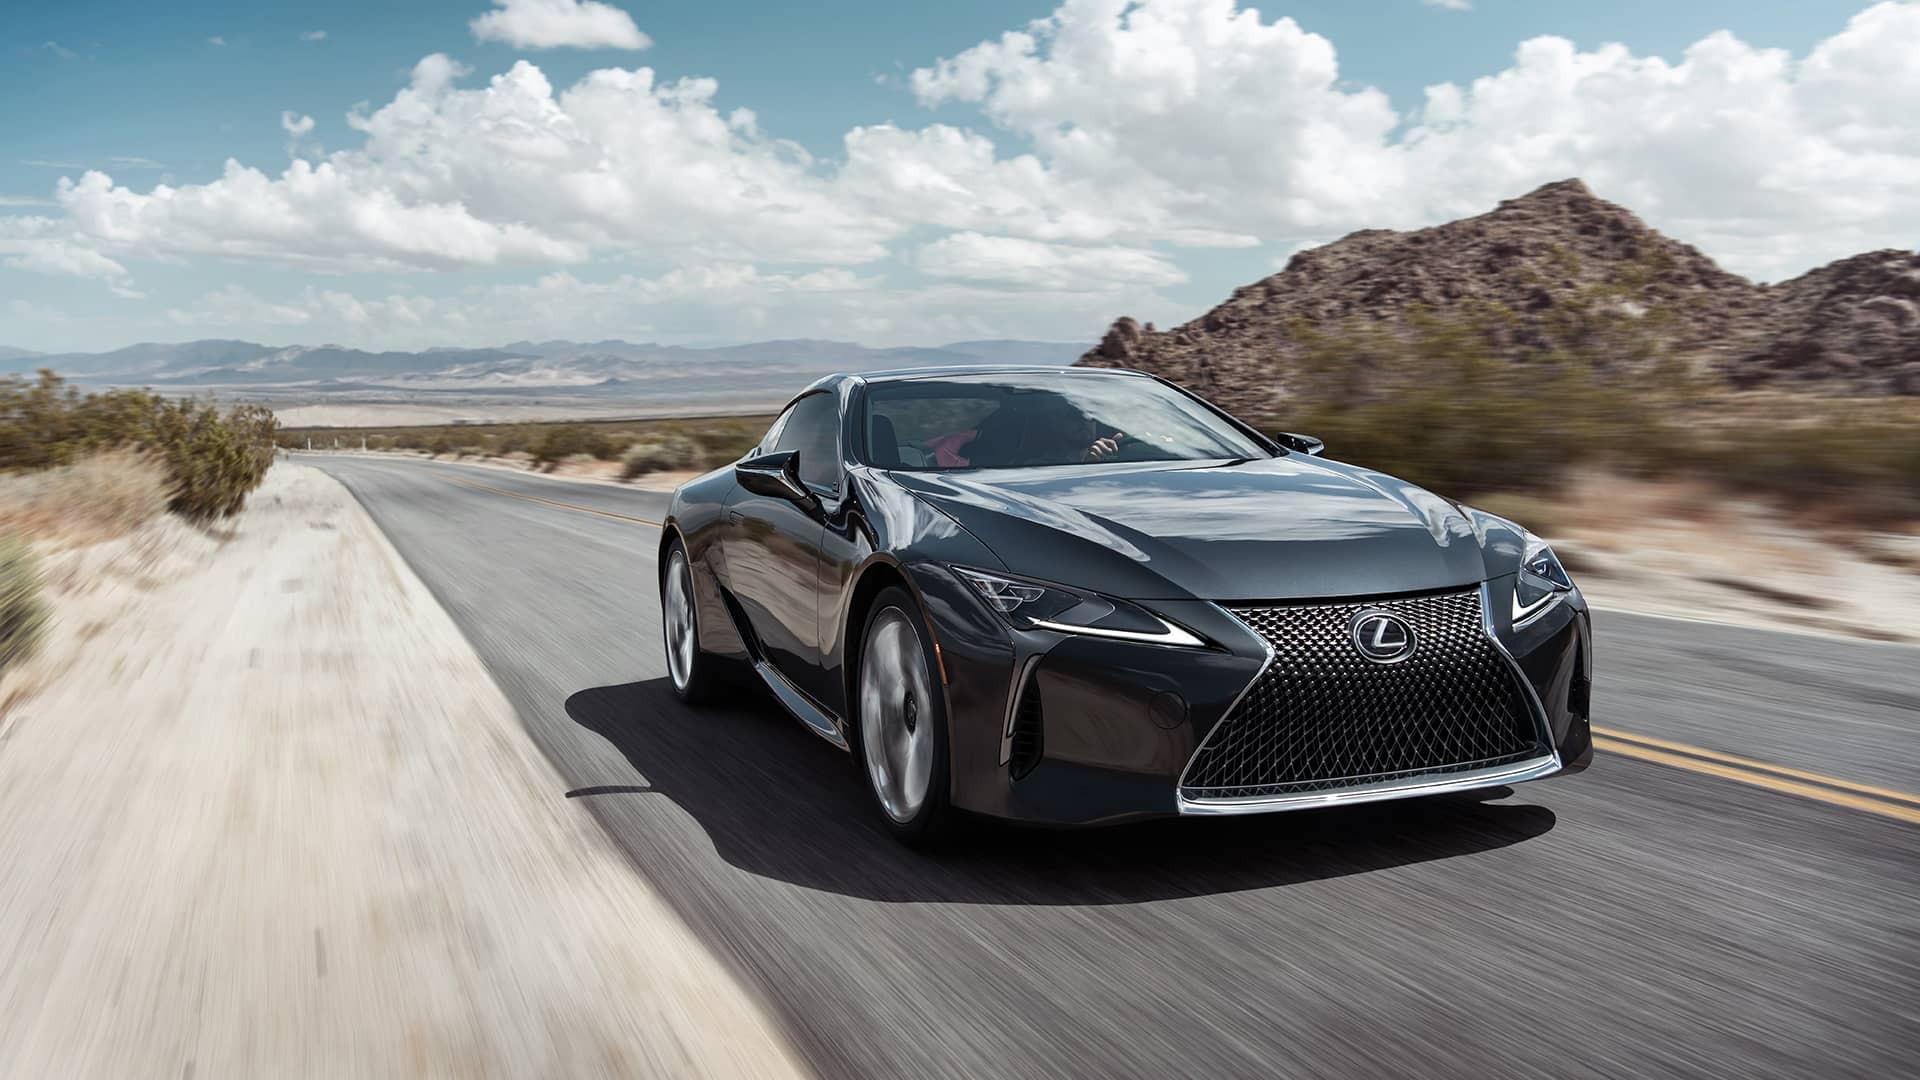 Lexus nổi tiếng với độ bền bỉ vượt trội